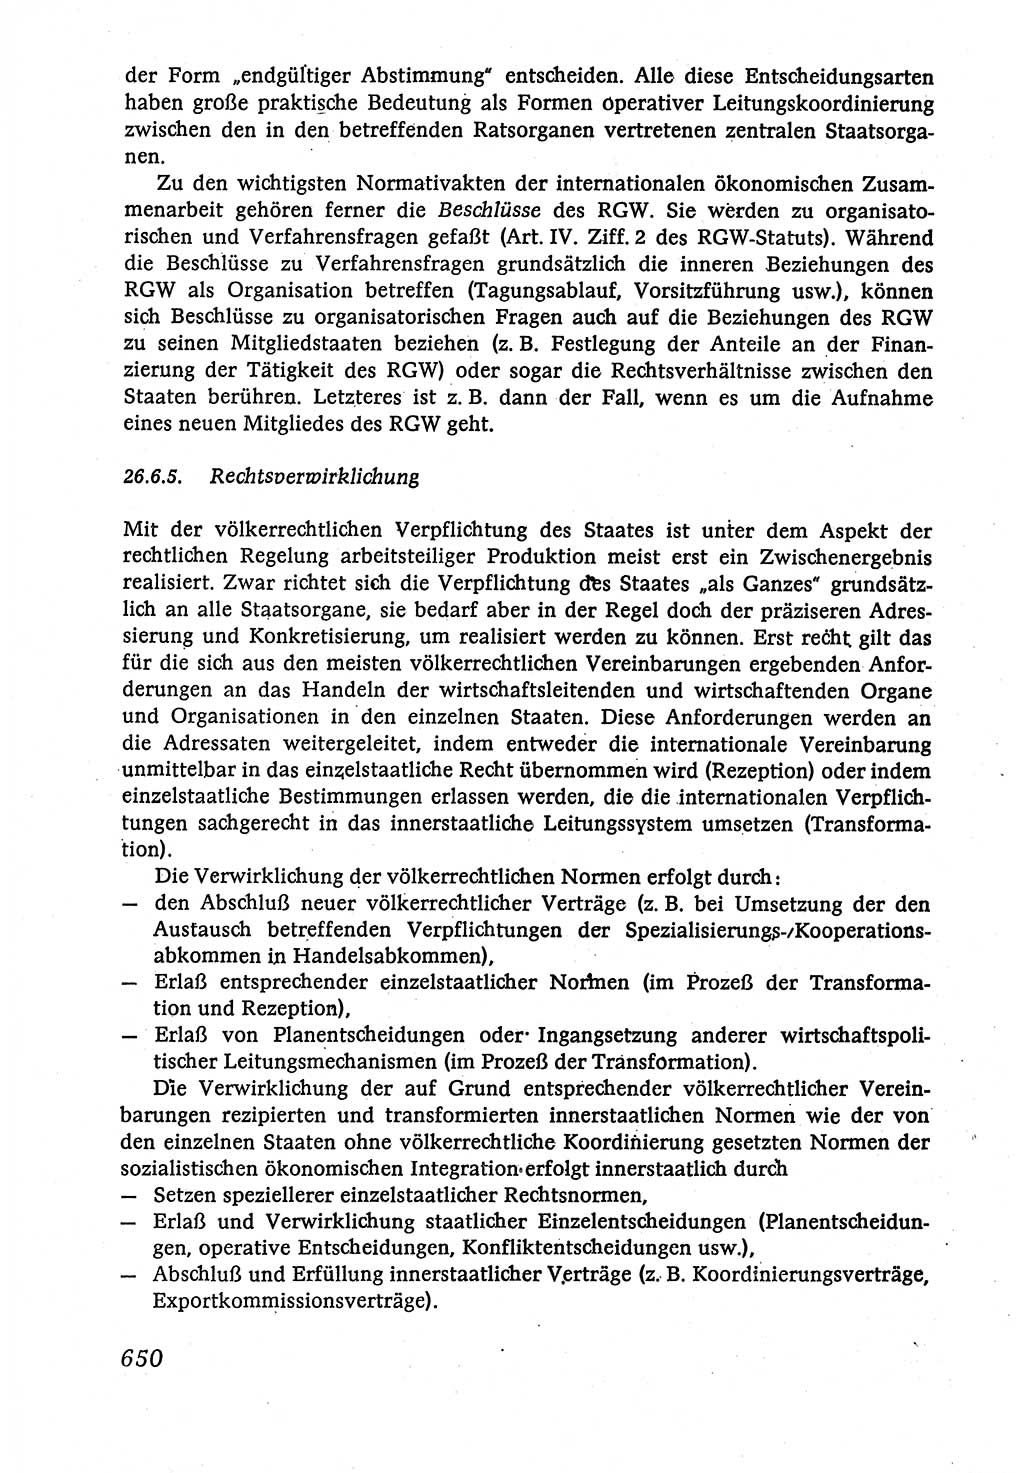 Marxistisch-leninistische (ML) Staats- und Rechtstheorie [Deutsche Demokratische Republik (DDR)], Lehrbuch 1980, Seite 650 (ML St.-R.-Th. DDR Lb. 1980, S. 650)